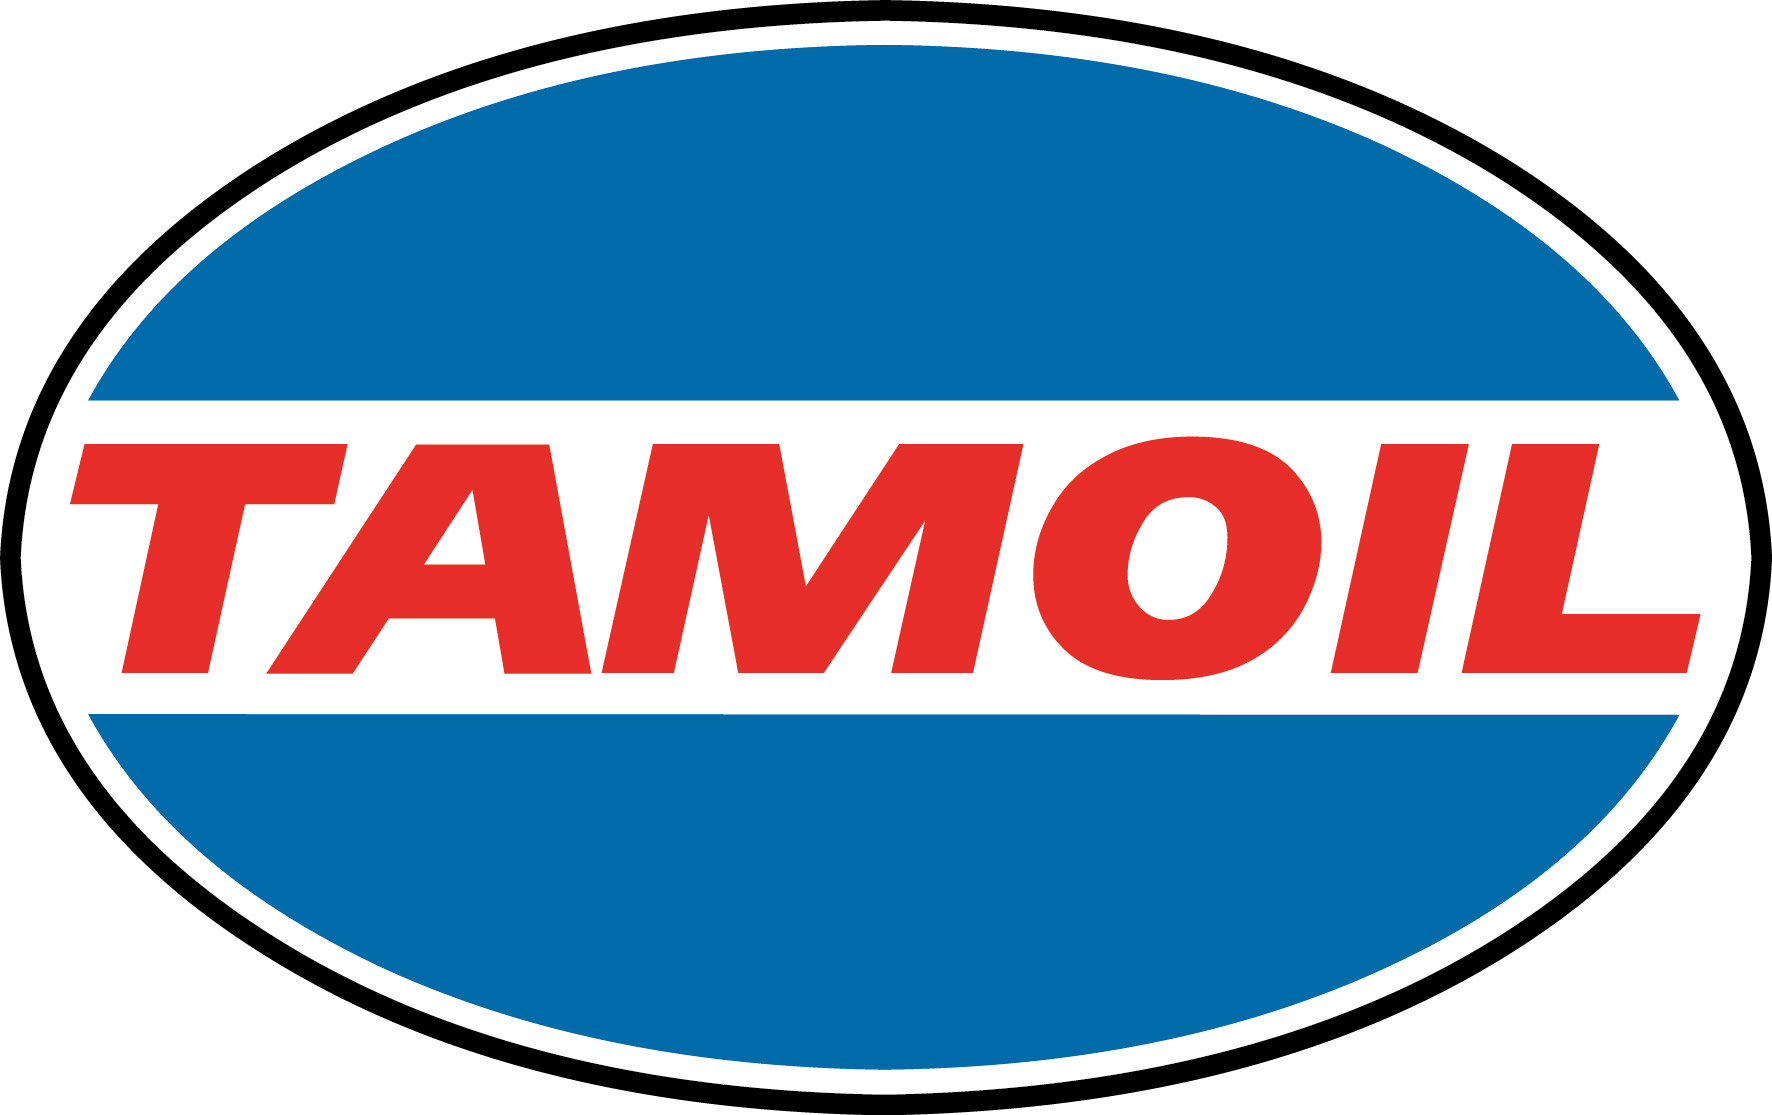 Tamoil logo (hoge resolutie) – Tamoil